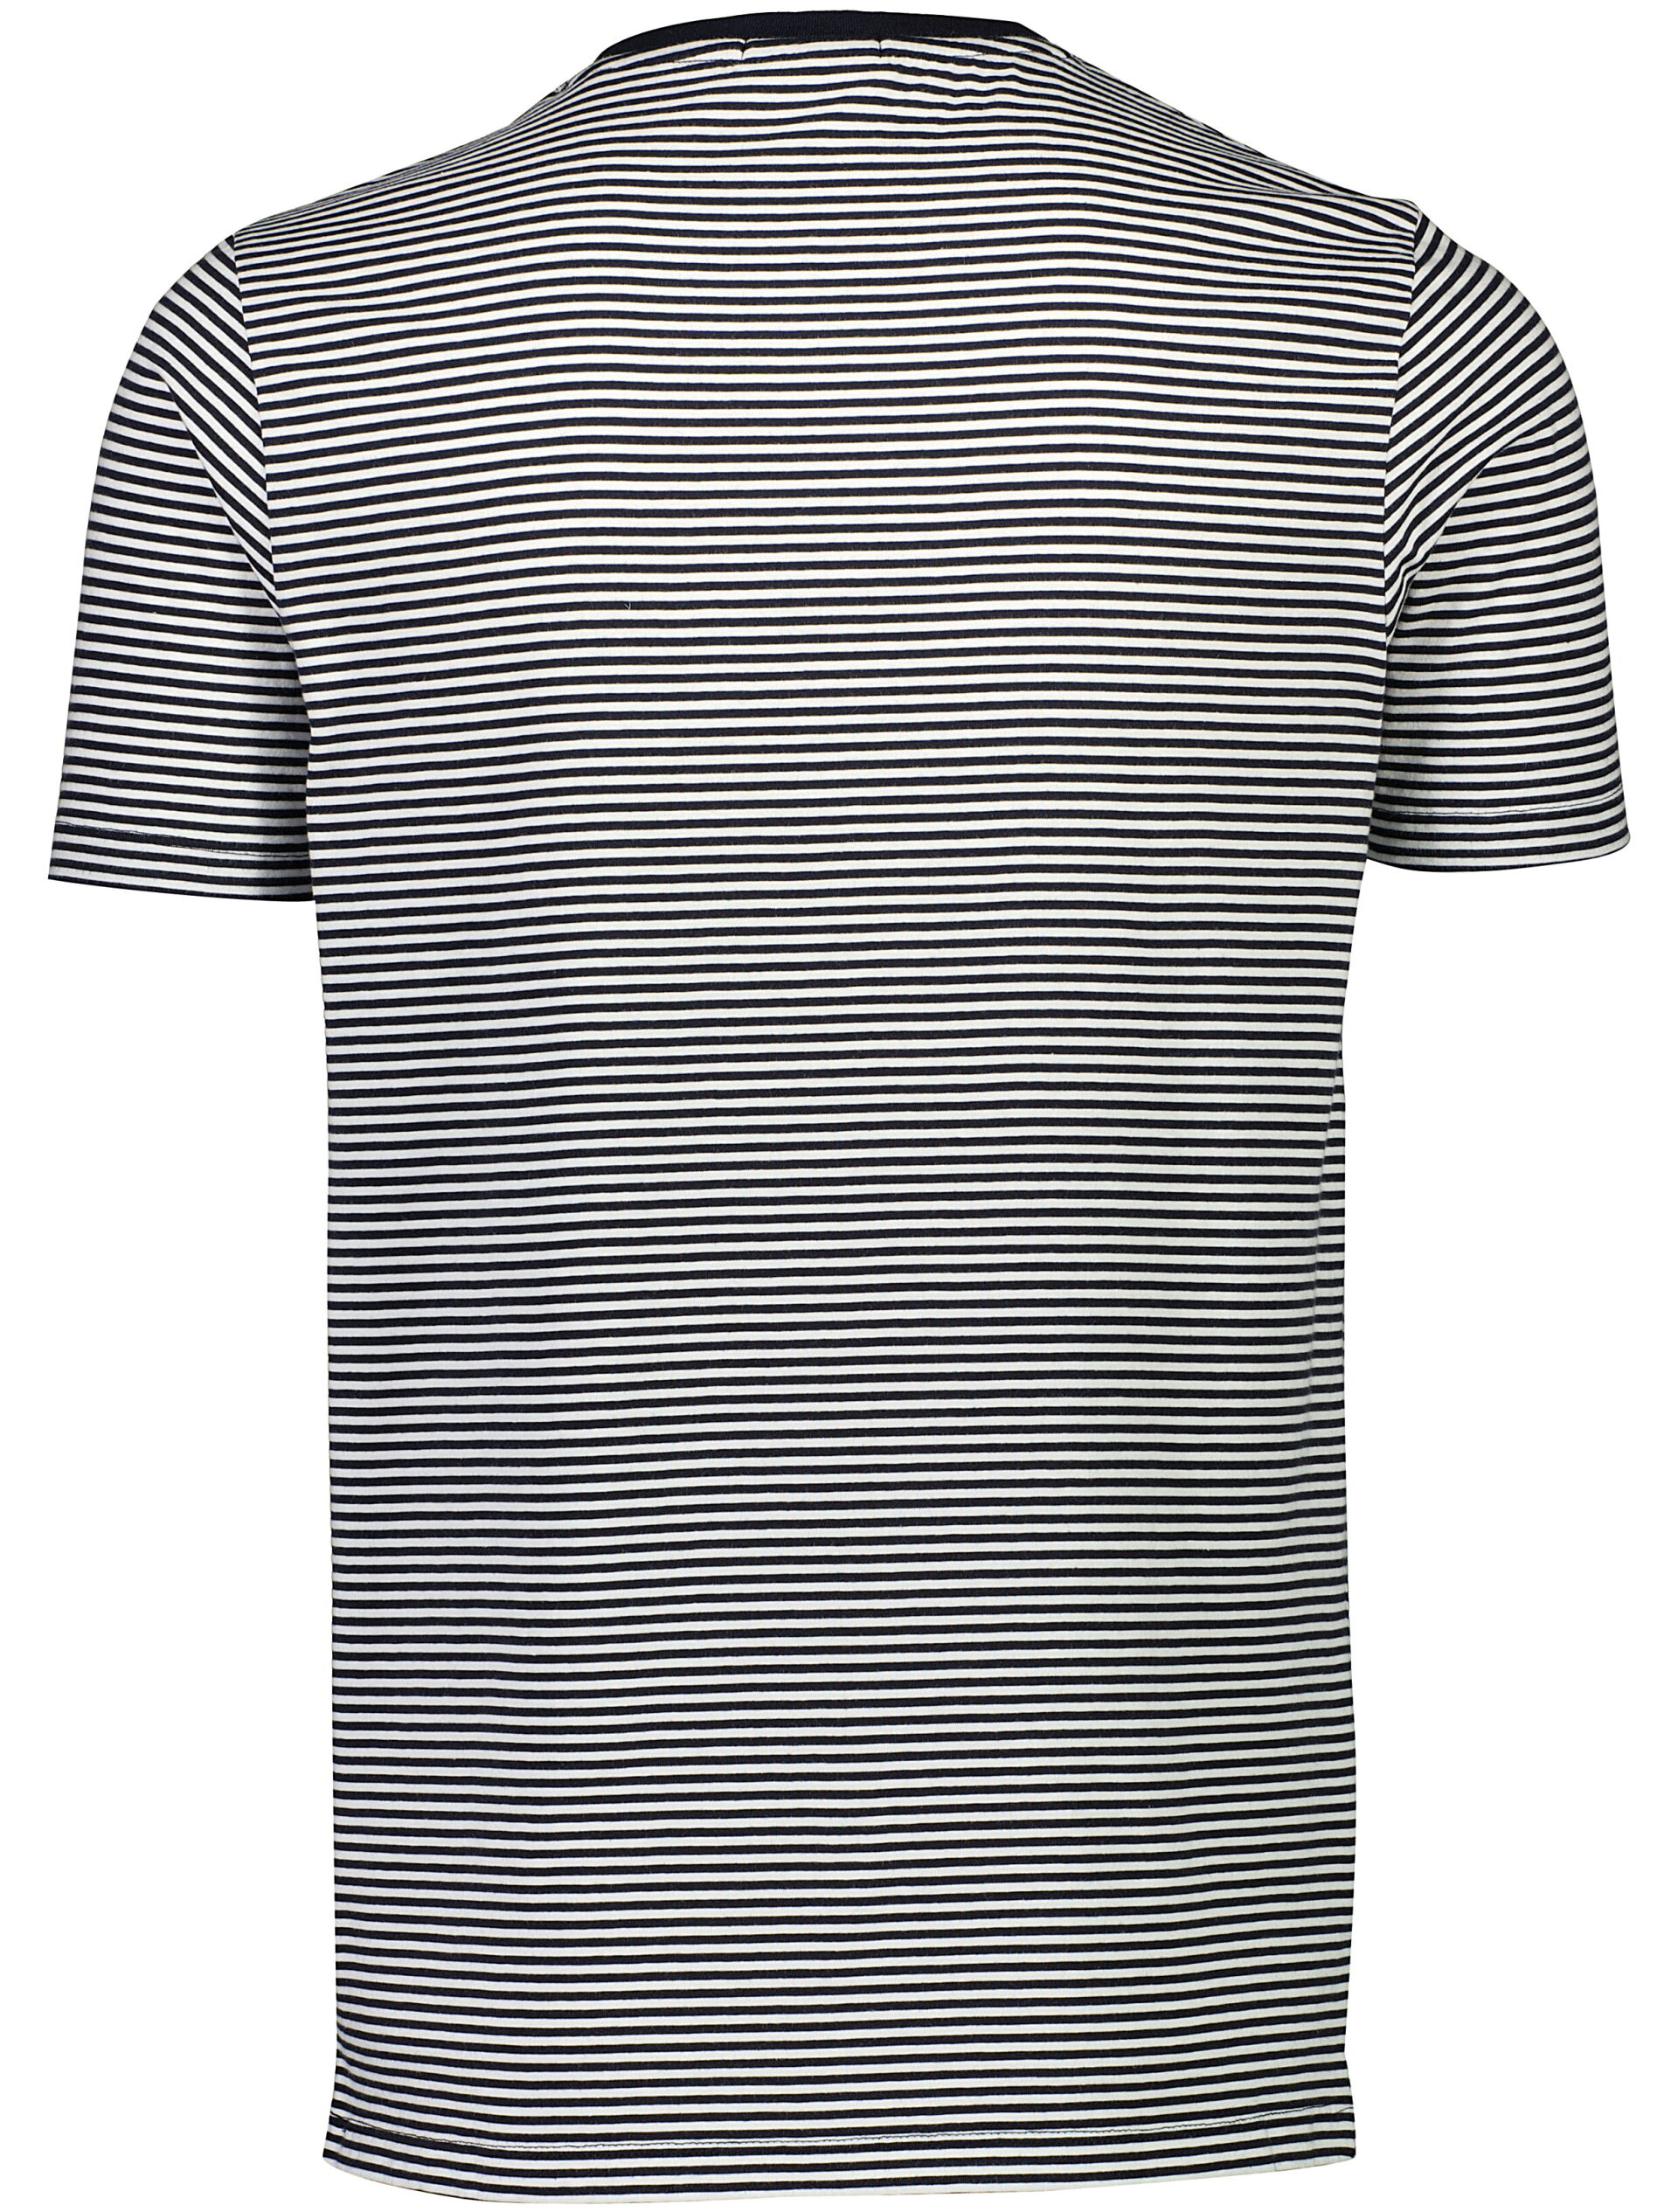 Junk de Luxe  T-shirt 60-452035